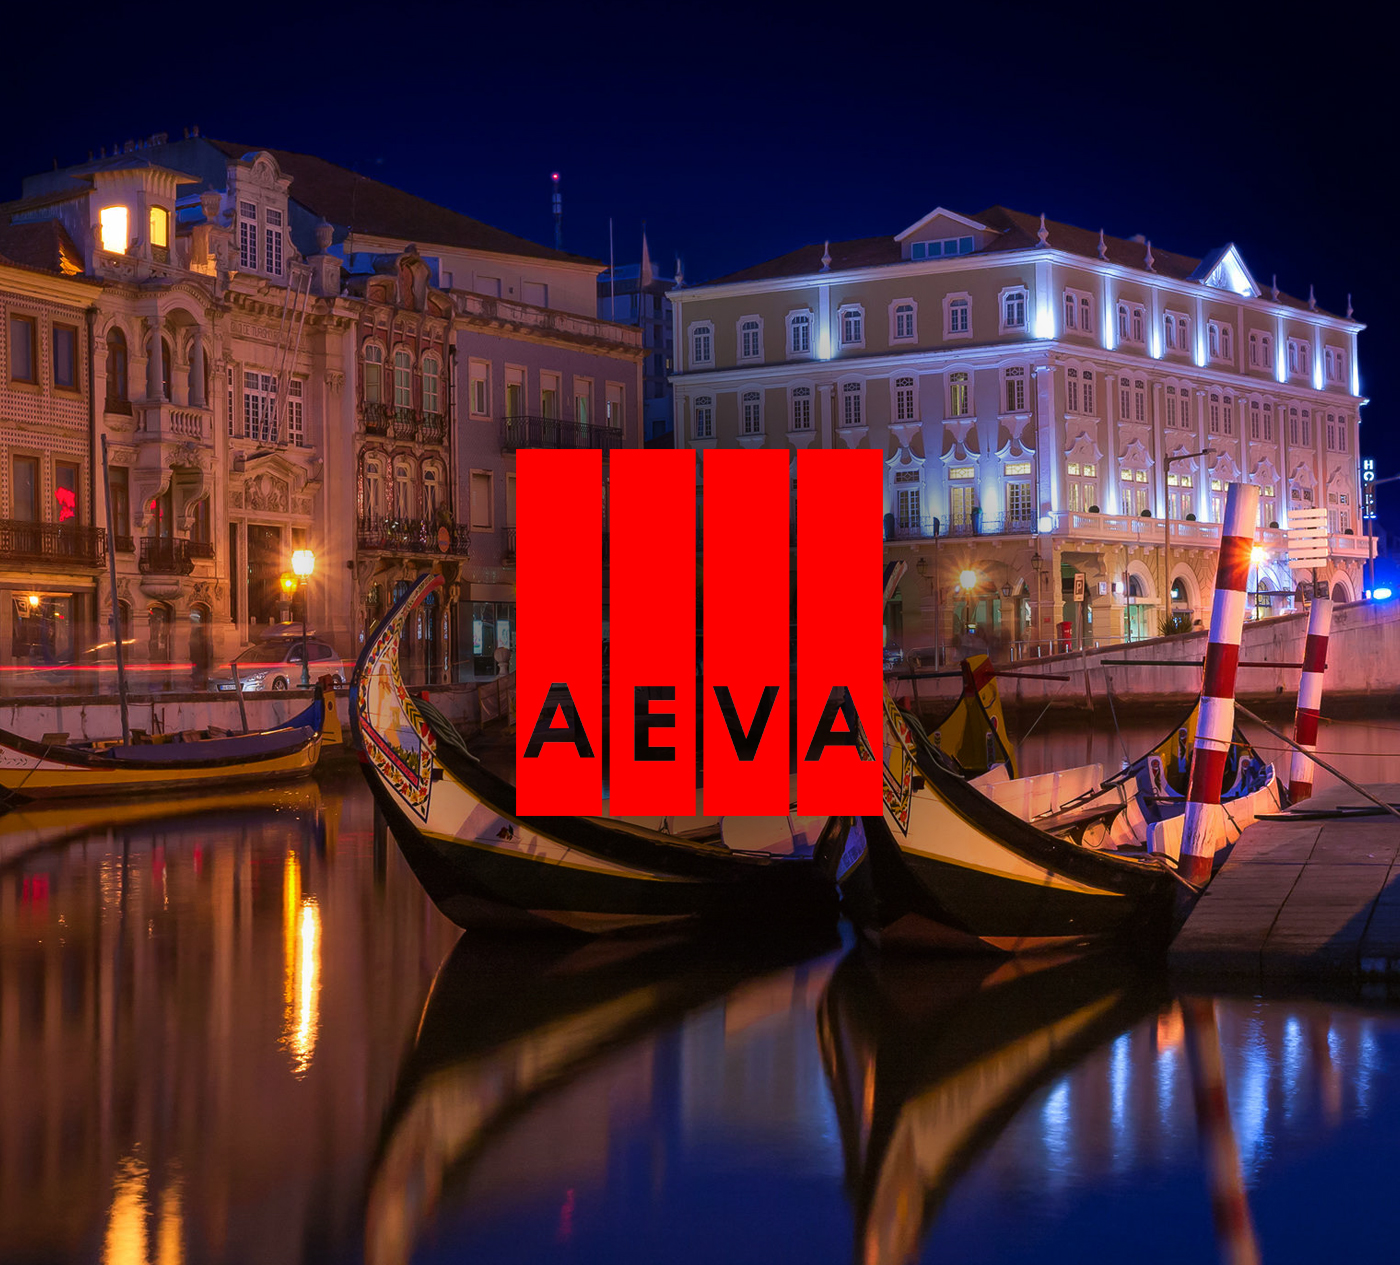 AEVA – Associação para a Educação e Valorização da Região de Aveiro